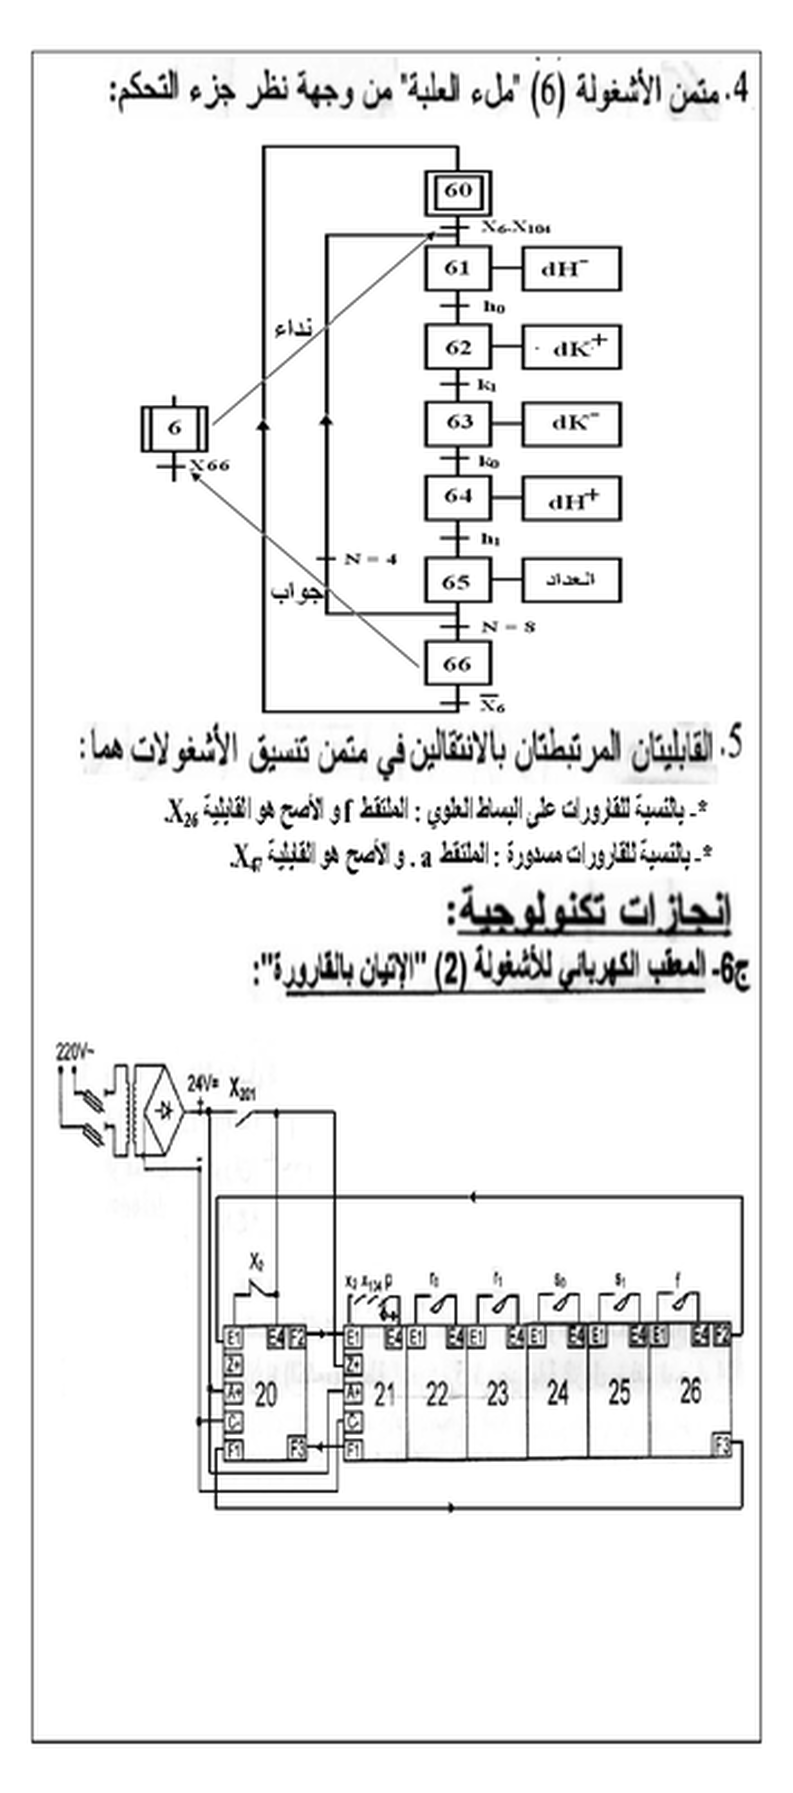 حصريا تصحيح مقترح لموضوع الهندسة الكهربائية بكالوريا 2012 5503387